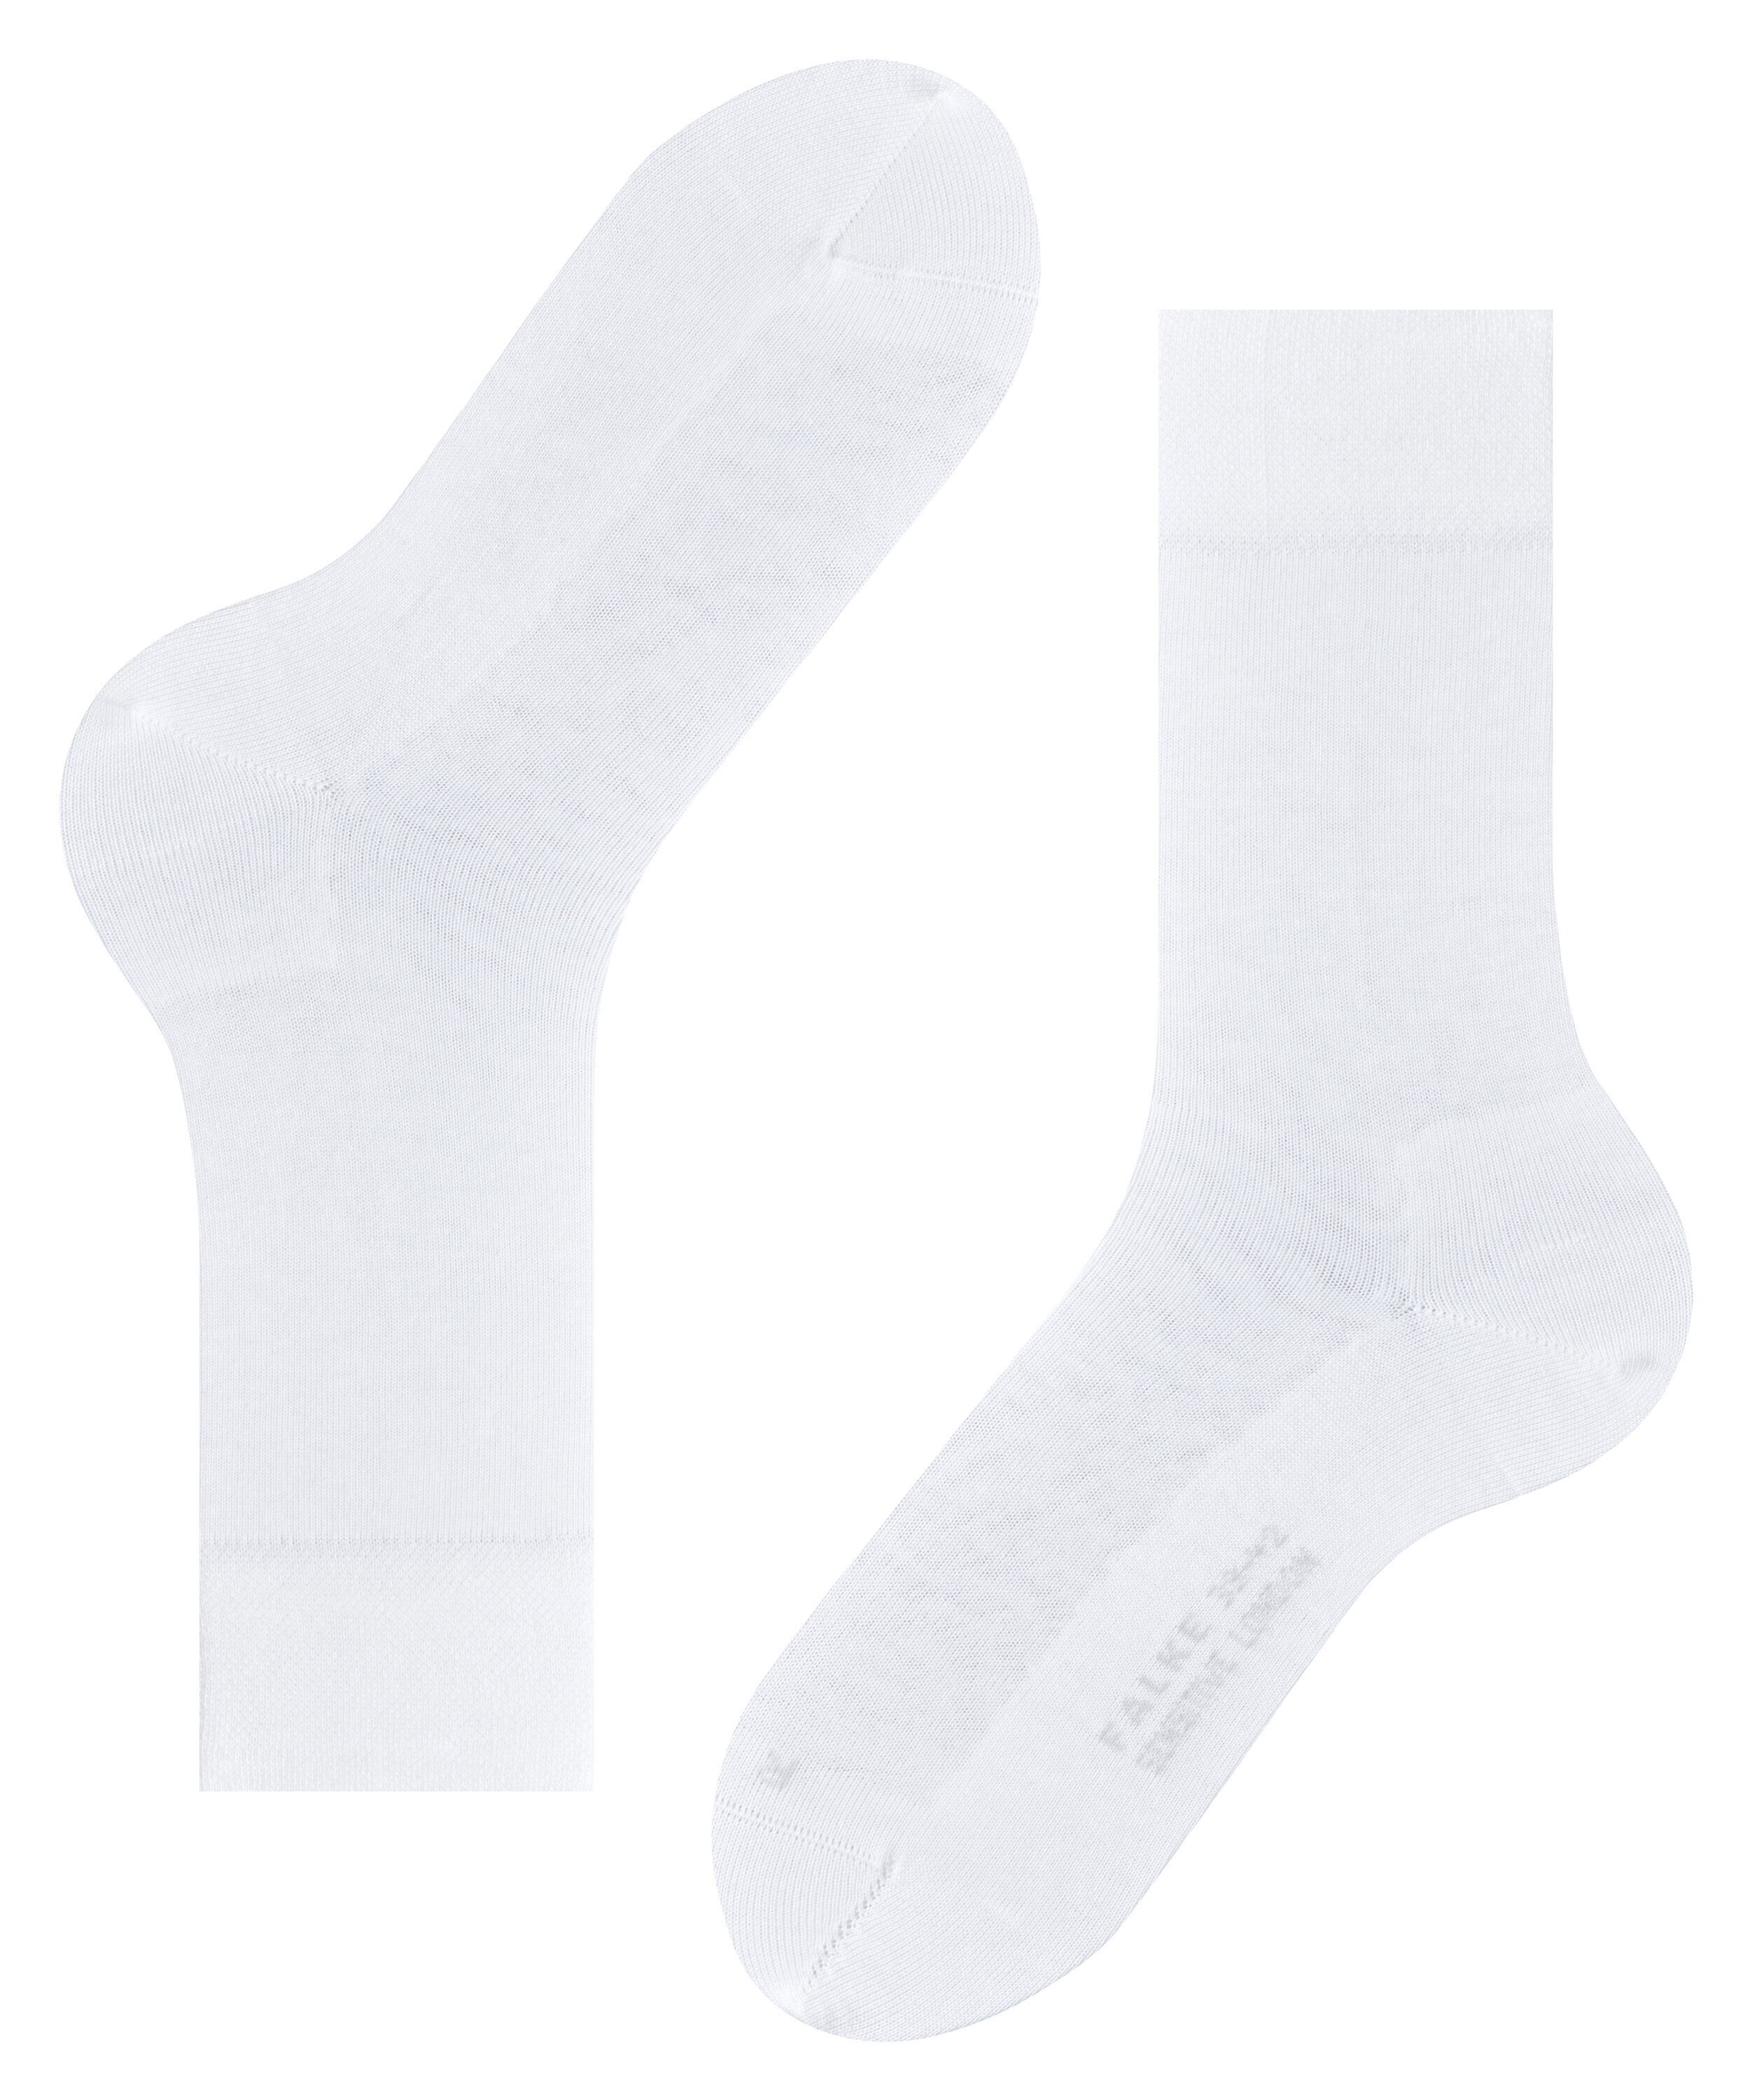 Herren-Socken "Sensitive London" mit druckfreiem Bund aus elastischer Baumwolle